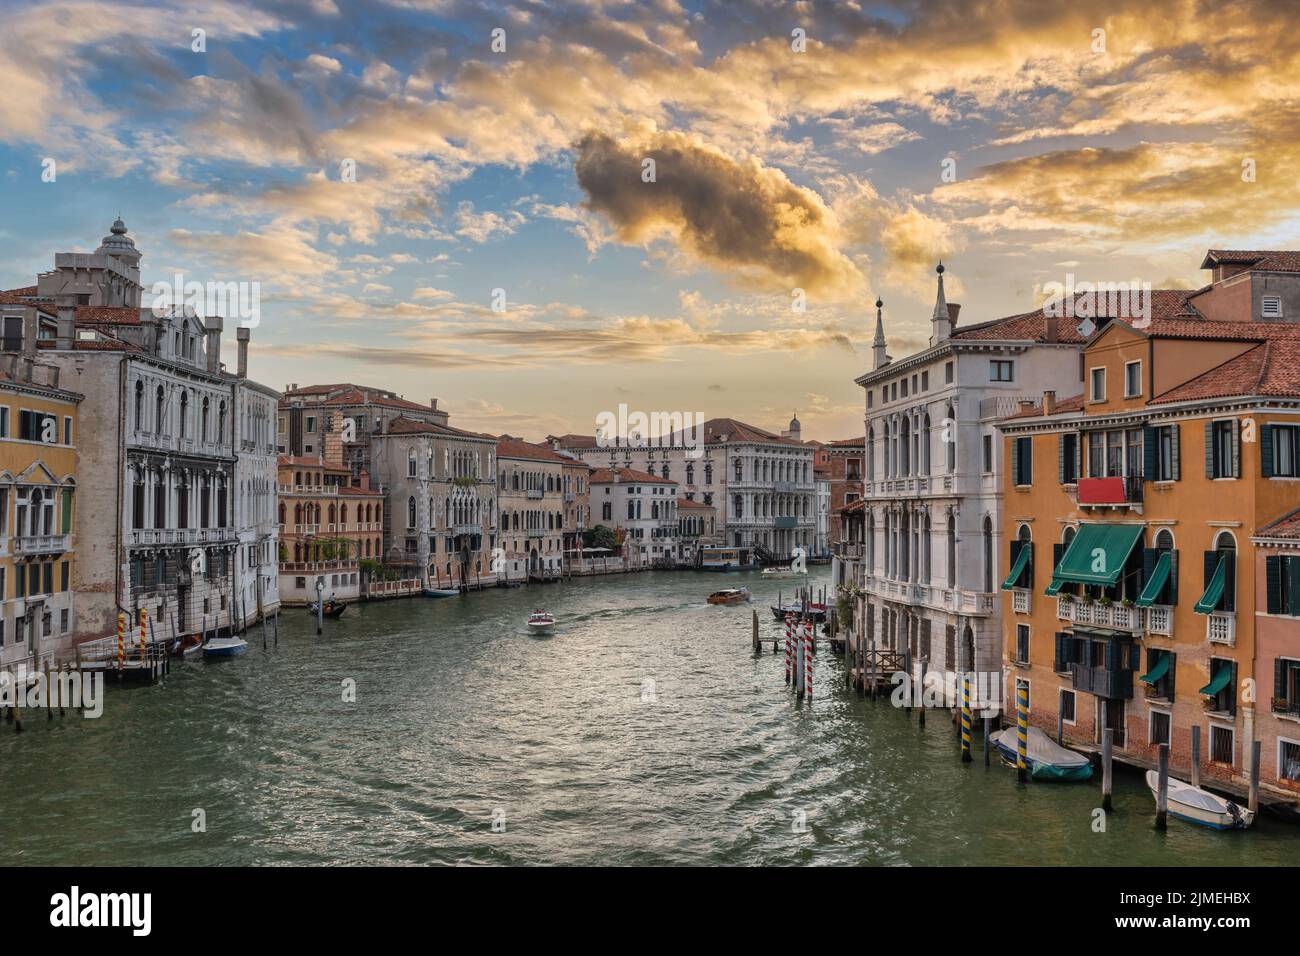 Venise Italie, vue sur la ville au lever du soleil sur le Grand Canal de Venise, Vénétie Italie Banque D'Images